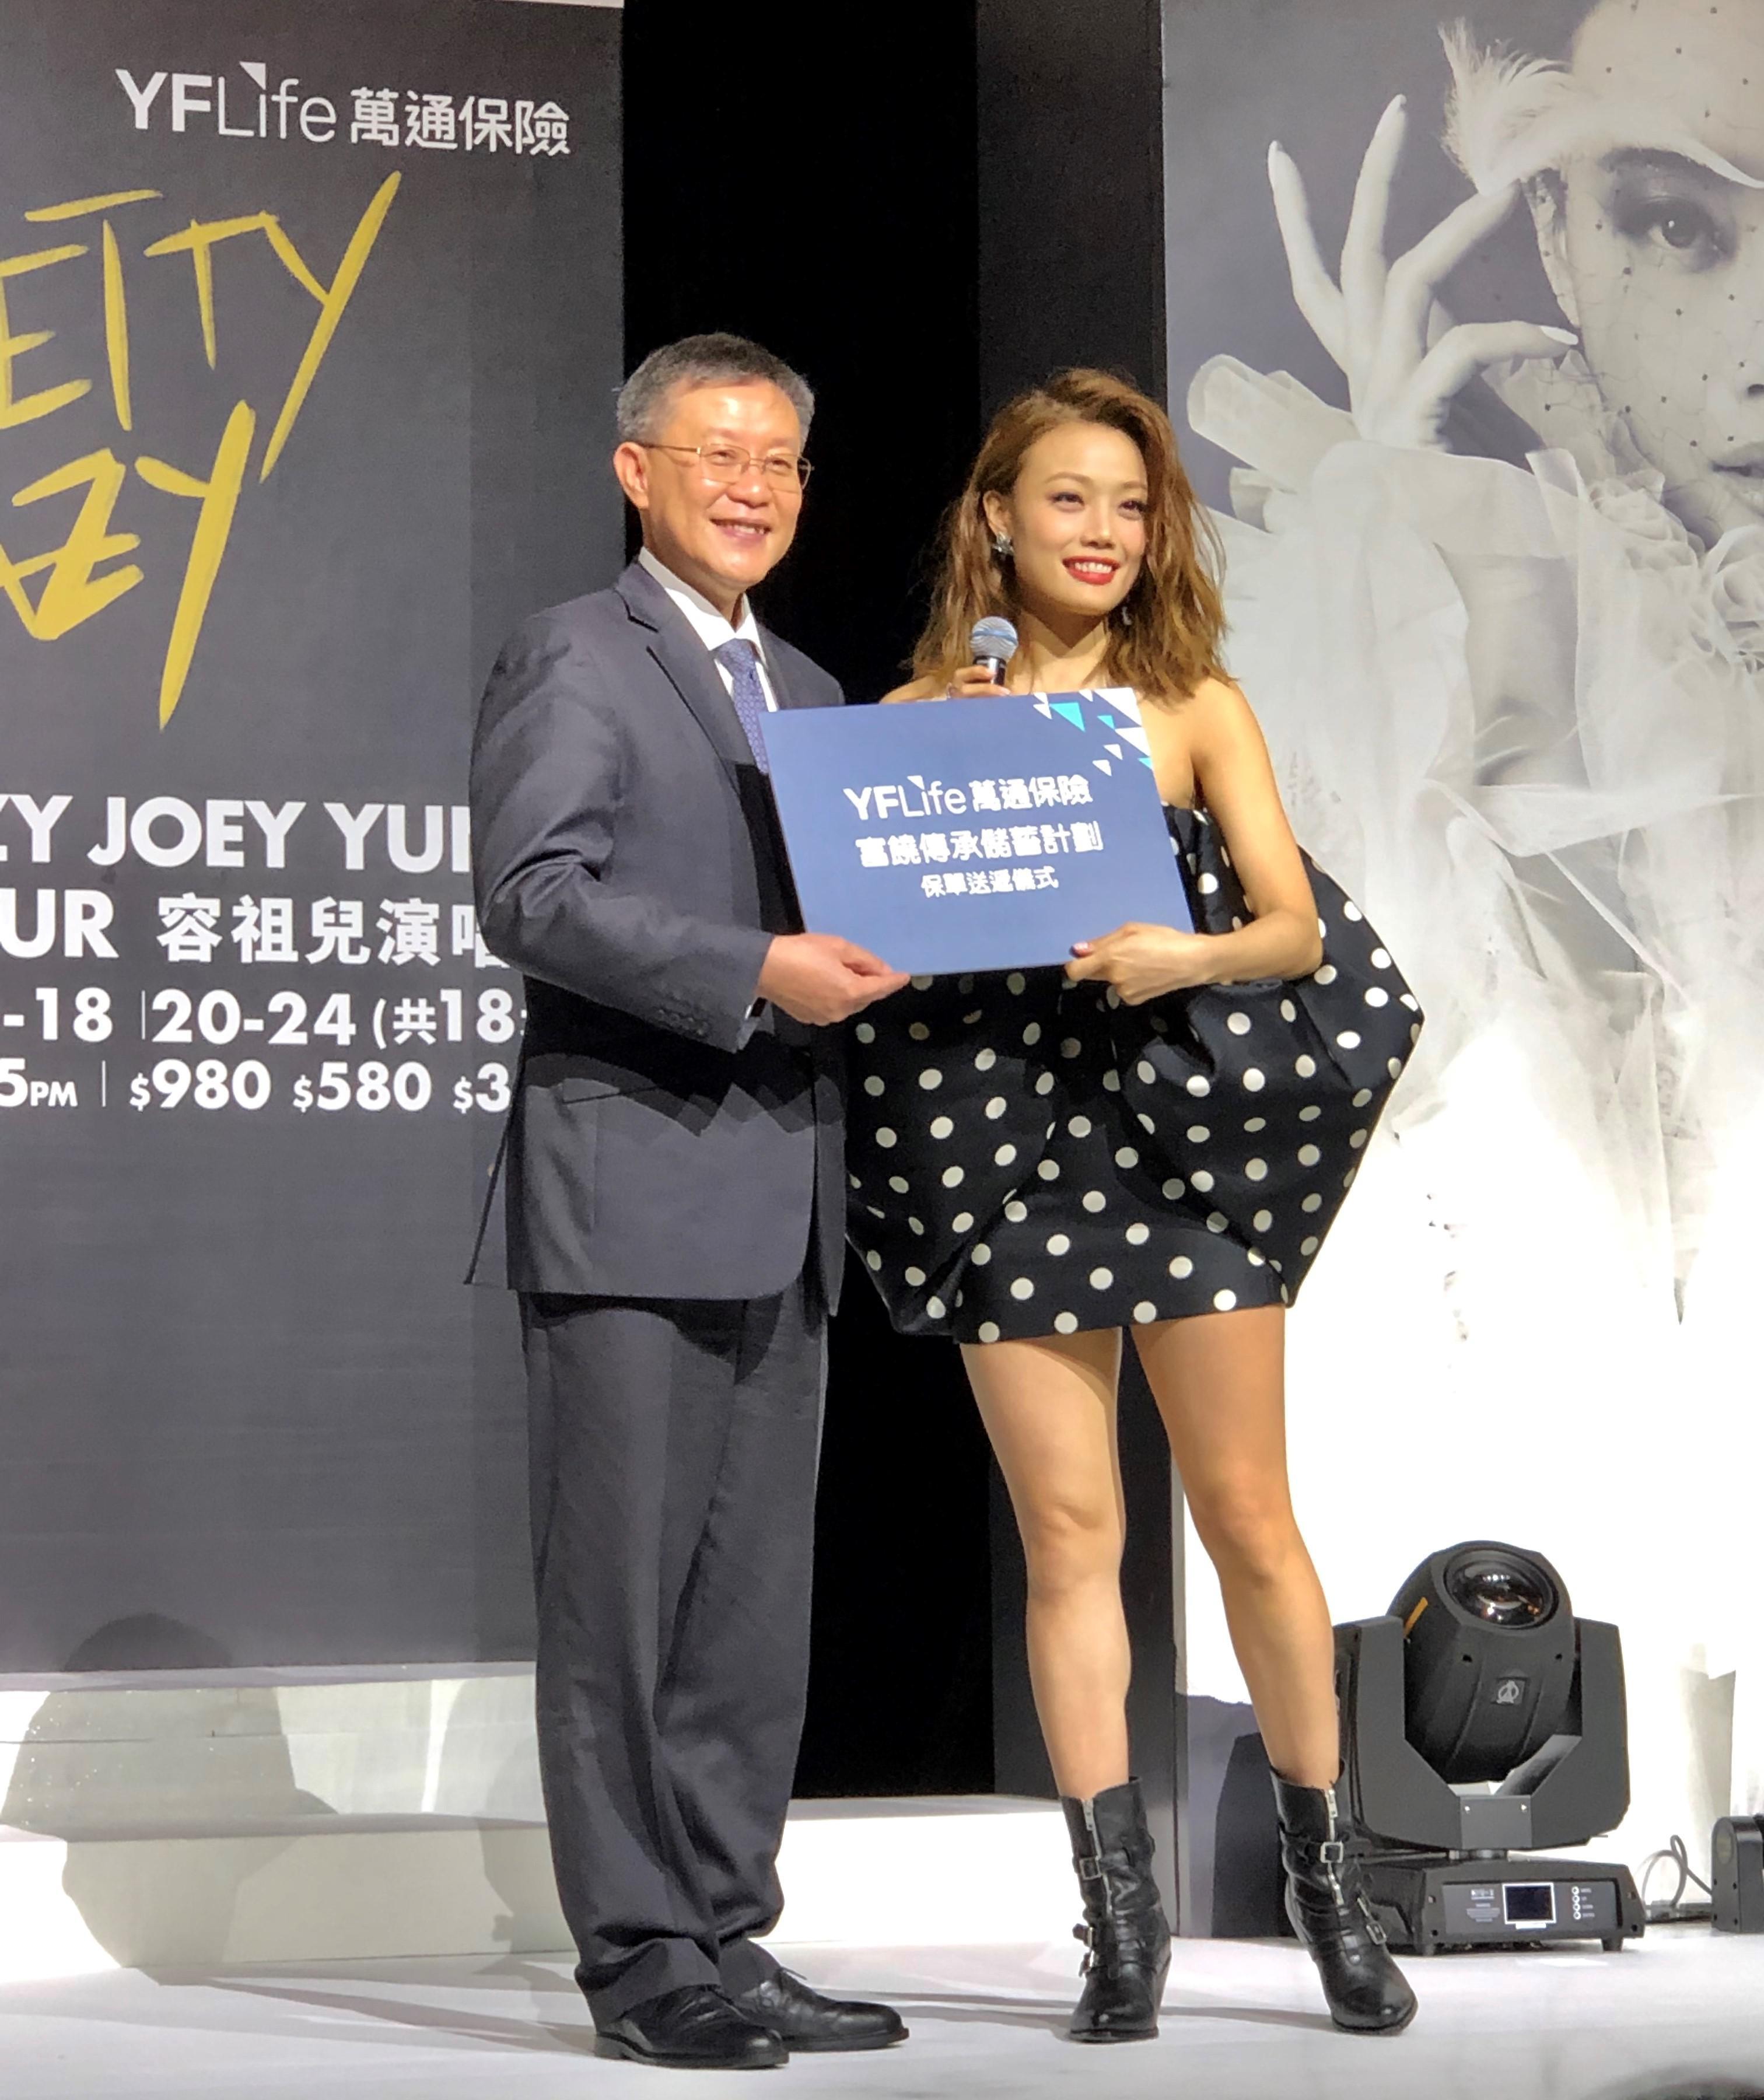 萬通保險常務董事兼總裁鄭慶藩先生為Joey送上一份「富饒傳承儲蓄計劃」保單，祝賀她入行20周年和預祝其演唱會得到空前成功。